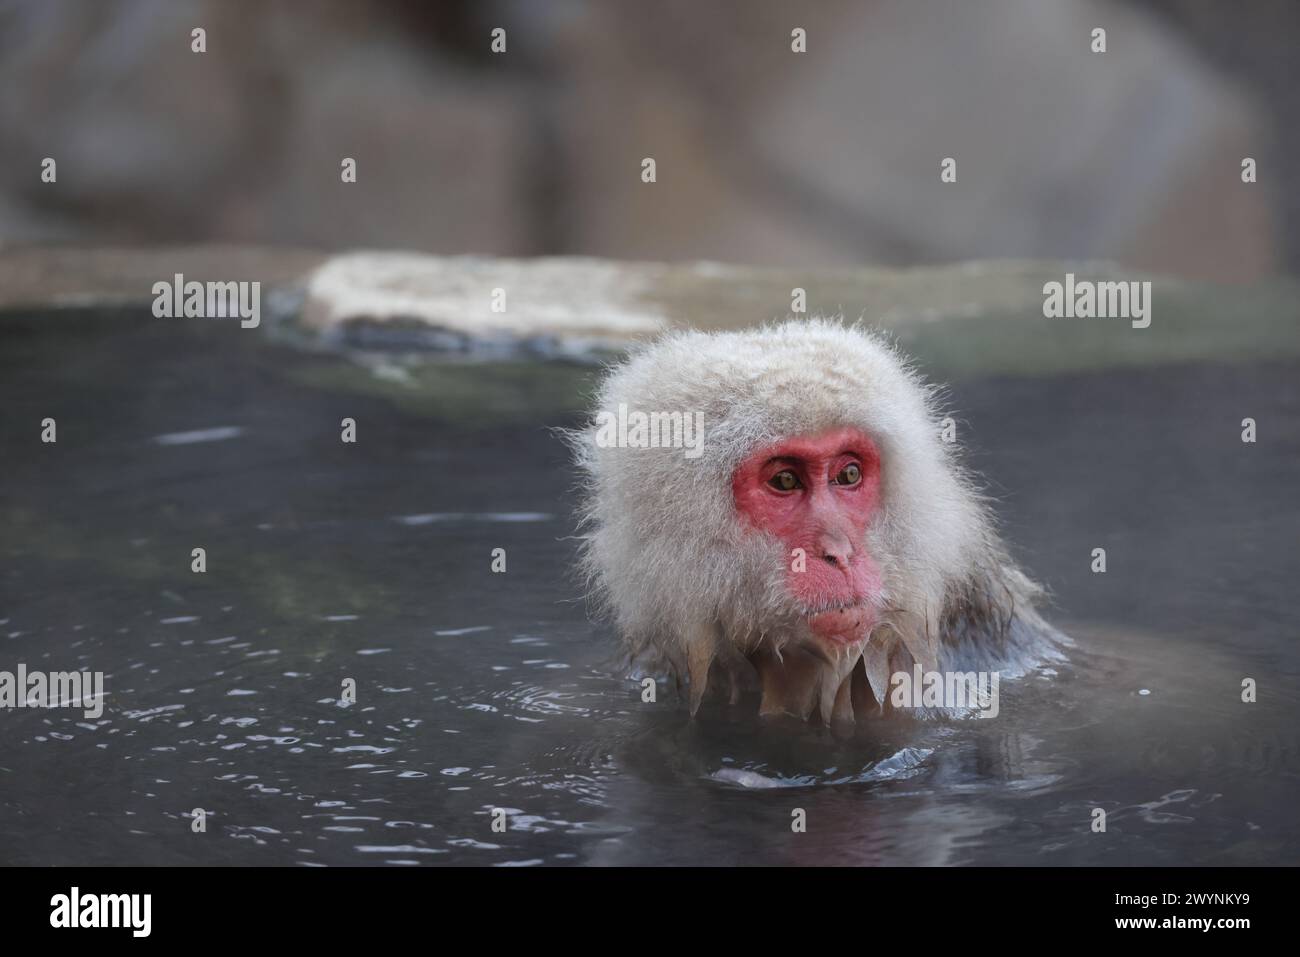 Il macaco giapponese (Macaca fuscata), noto anche come scimmia delle nevi, è una specie di scimmia terrestre del Vecchio mondo originaria del Giappone. Foto Stock